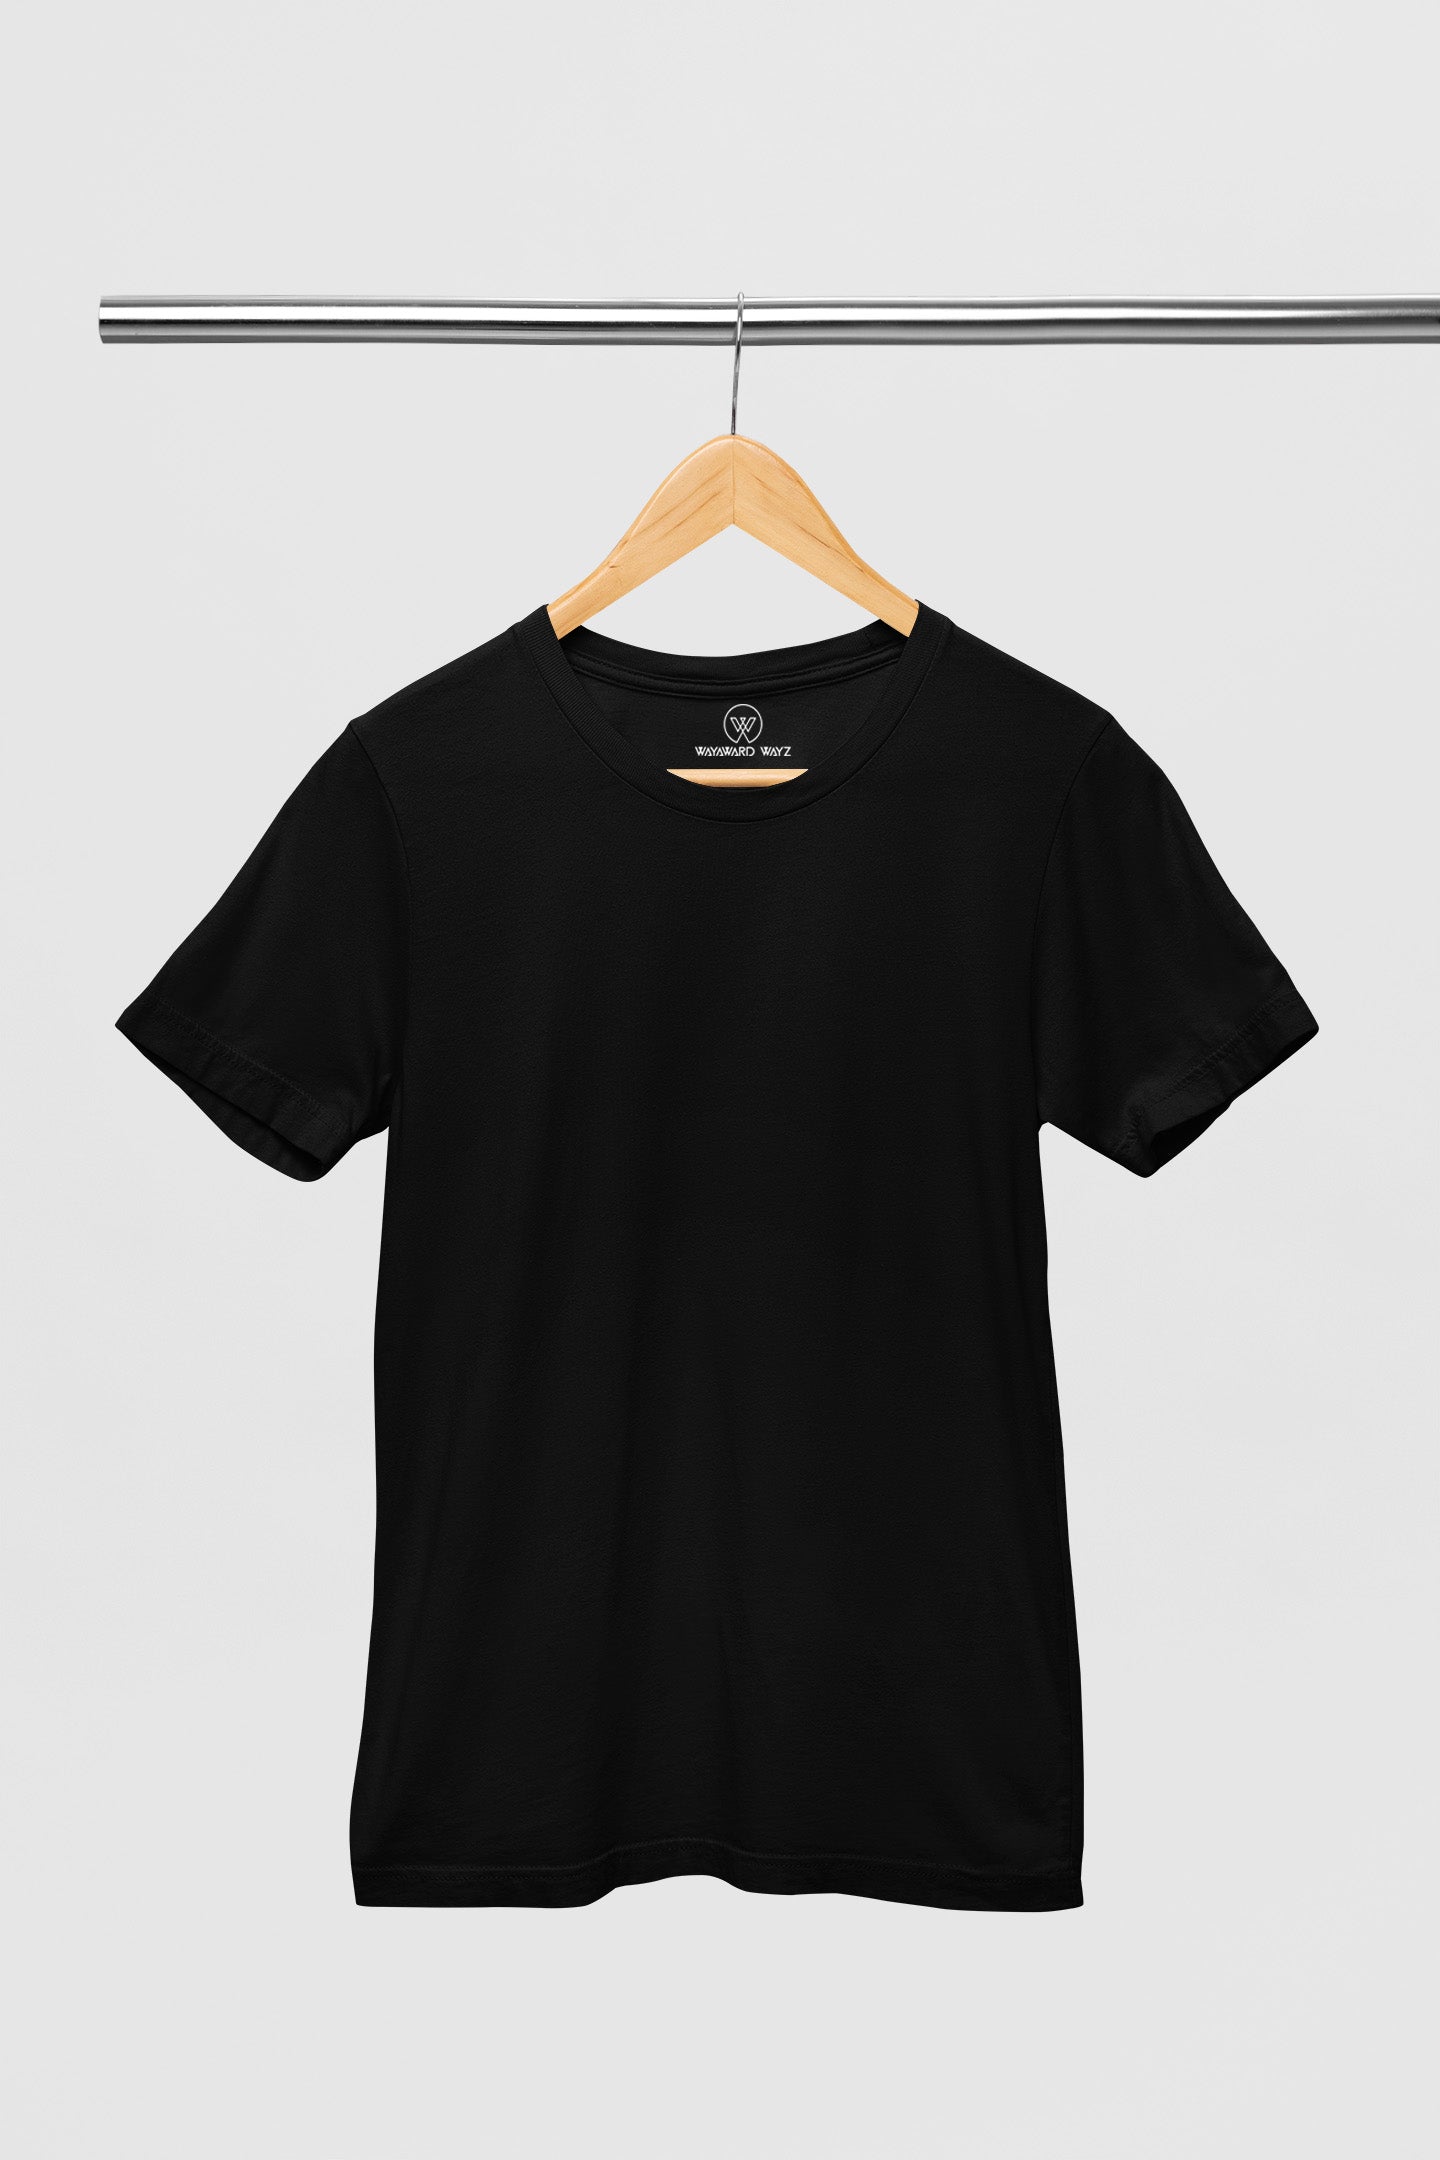 Tagless Unisex T-Shirt